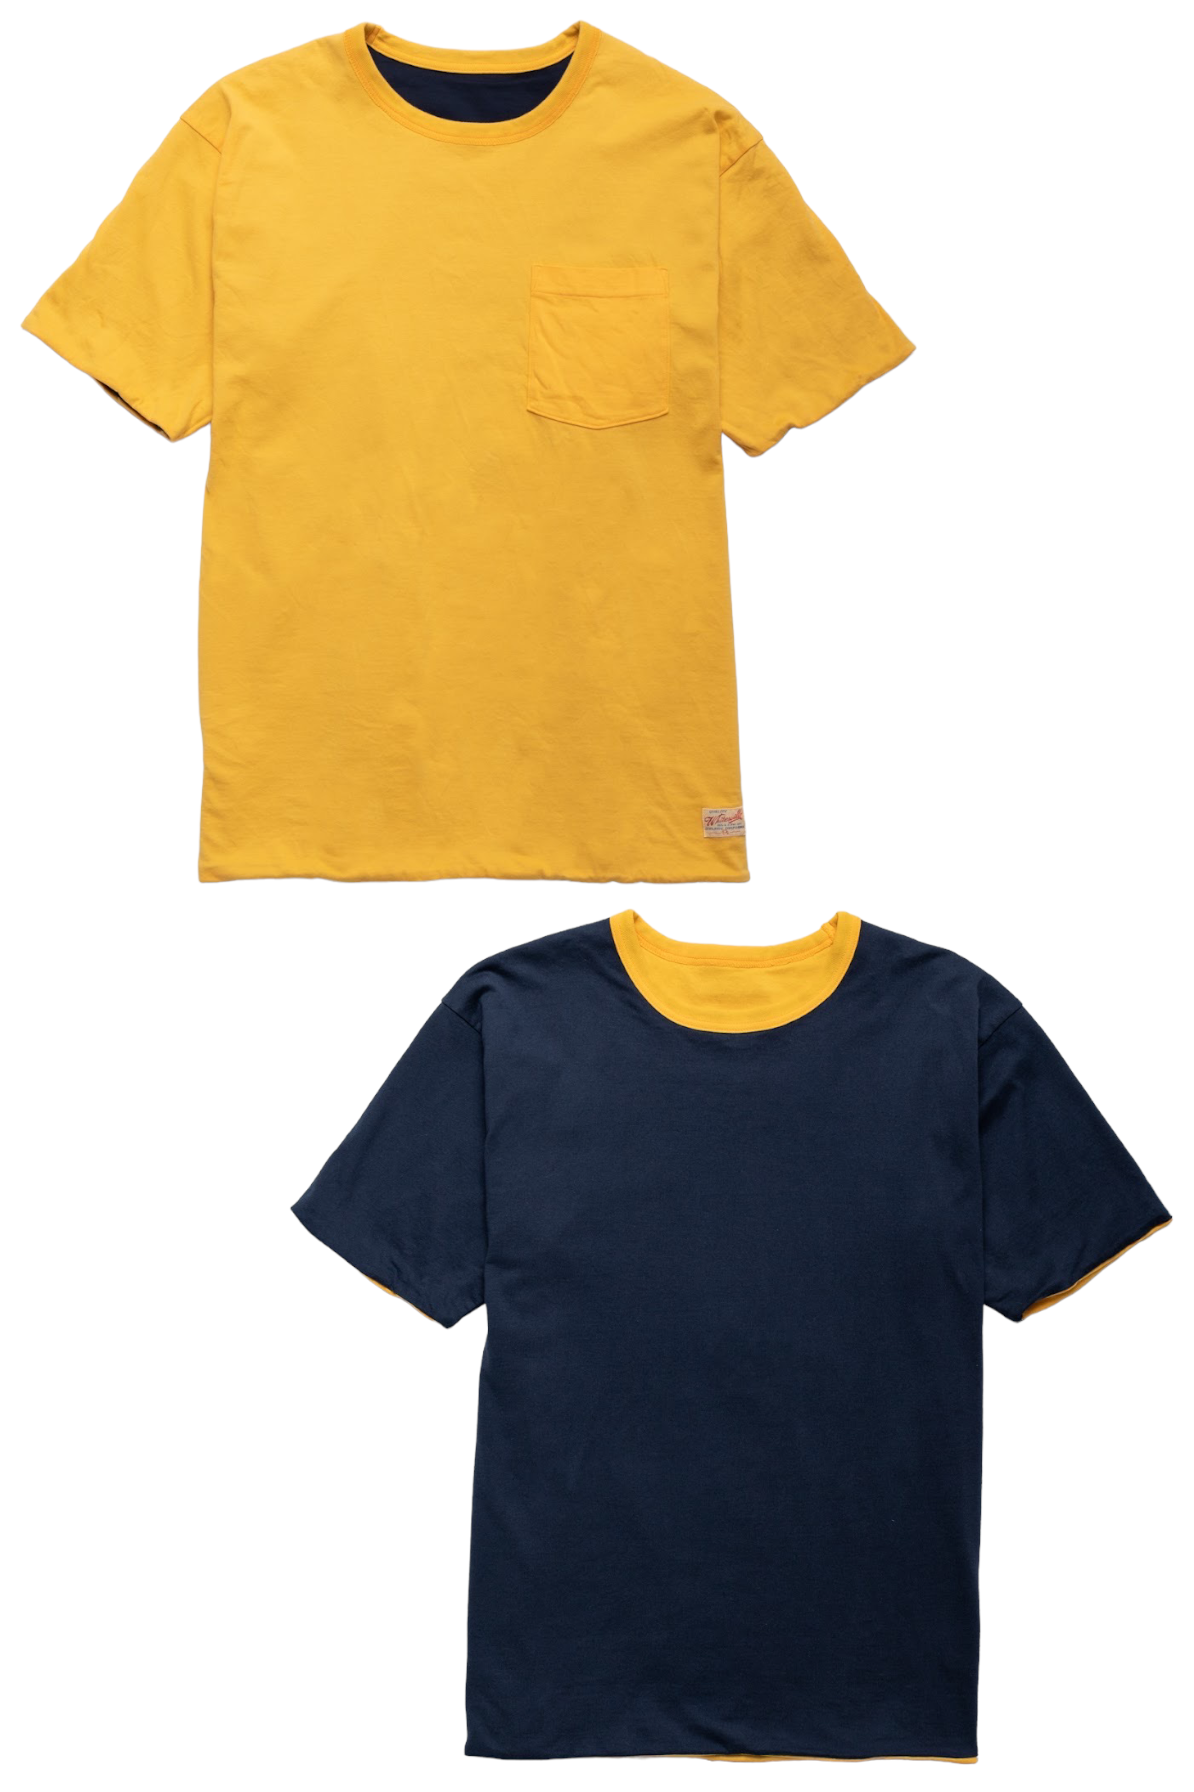 Whitesville 40/2 S/S Reversible Pocket T-Shirt - Navy x Gold